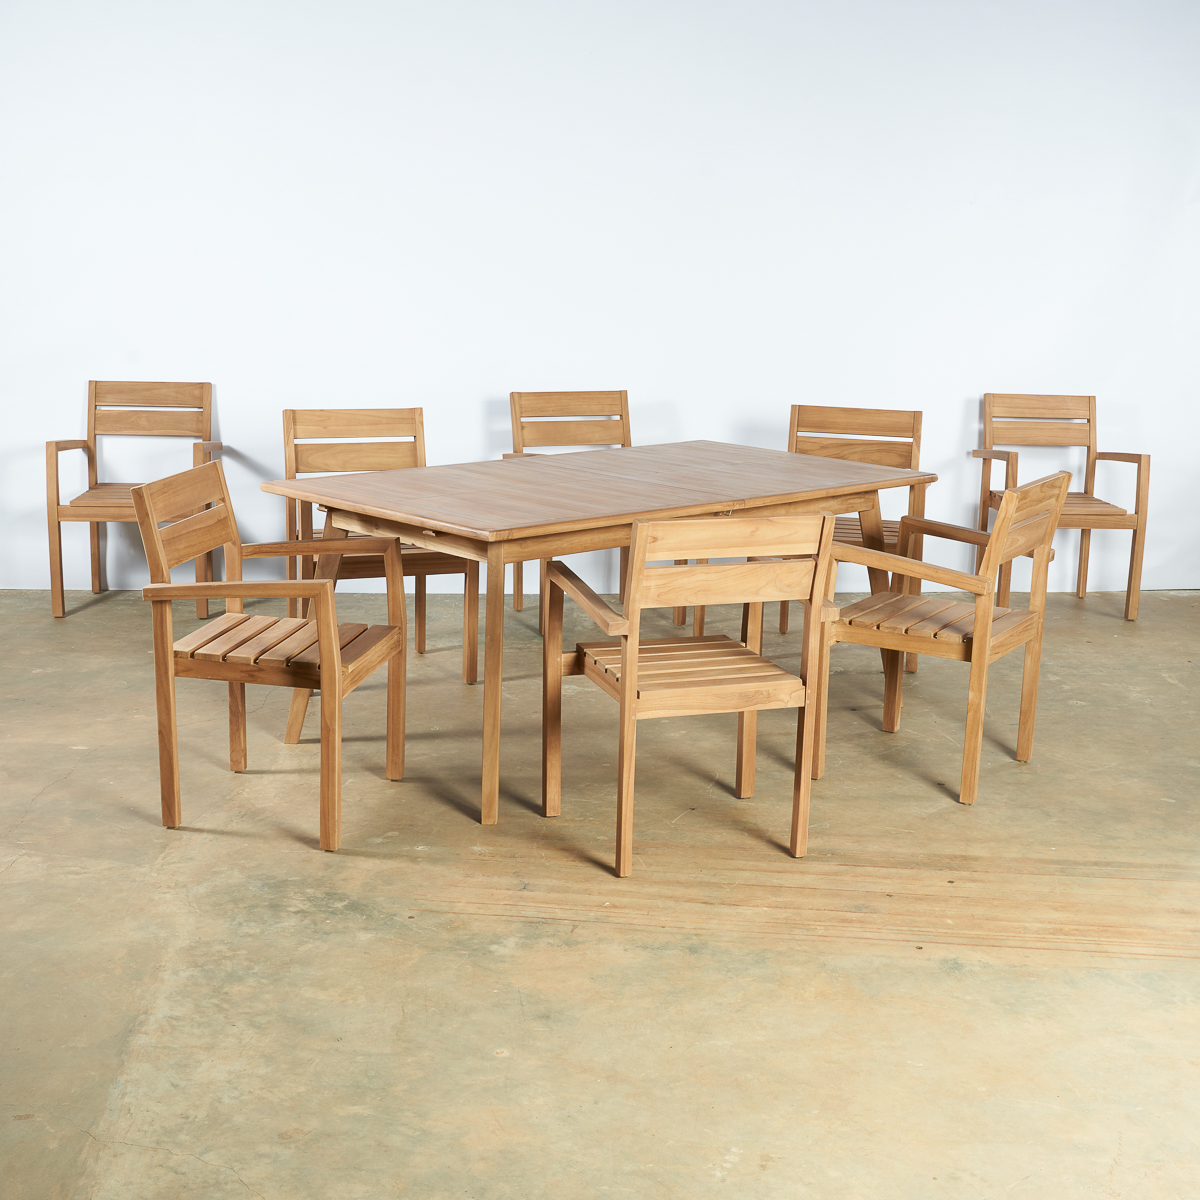 Table de jardin rectangulaire teck + 8 chaises avec accoudoirs